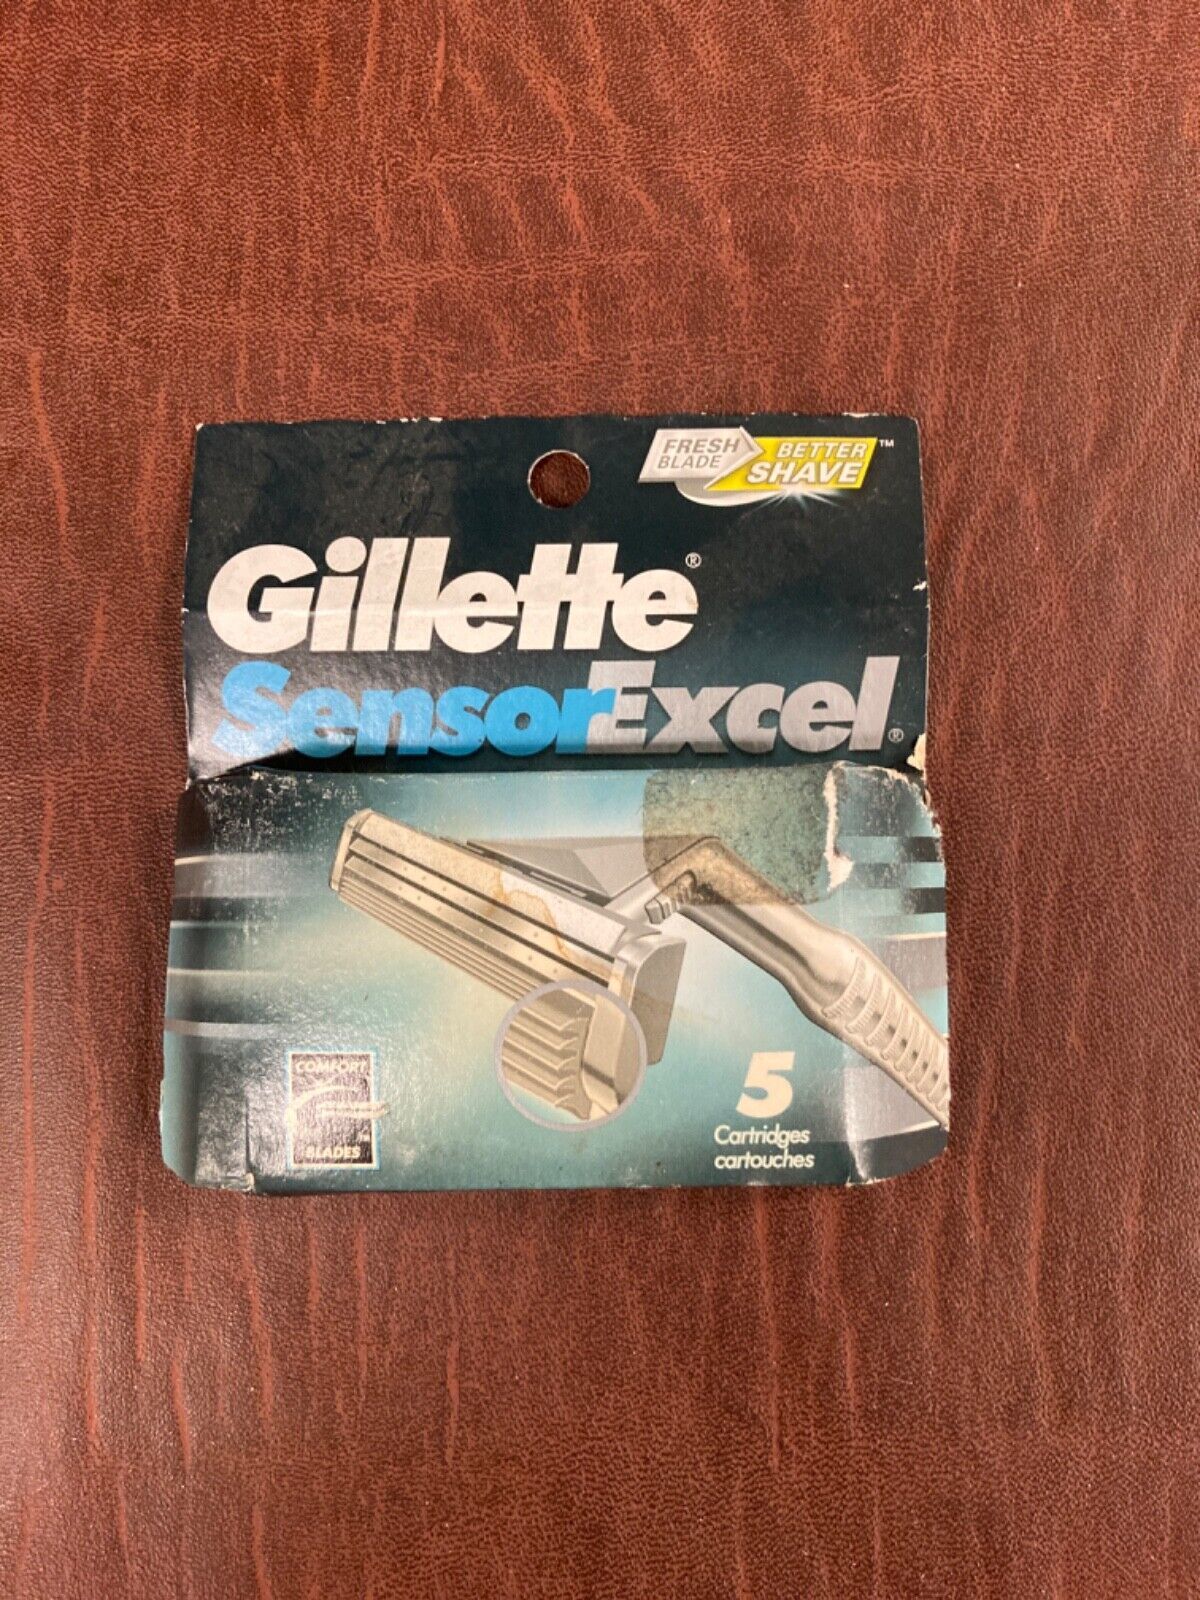 Gillette Sensor Excel Razor Blades - 5 Pack - $9.49